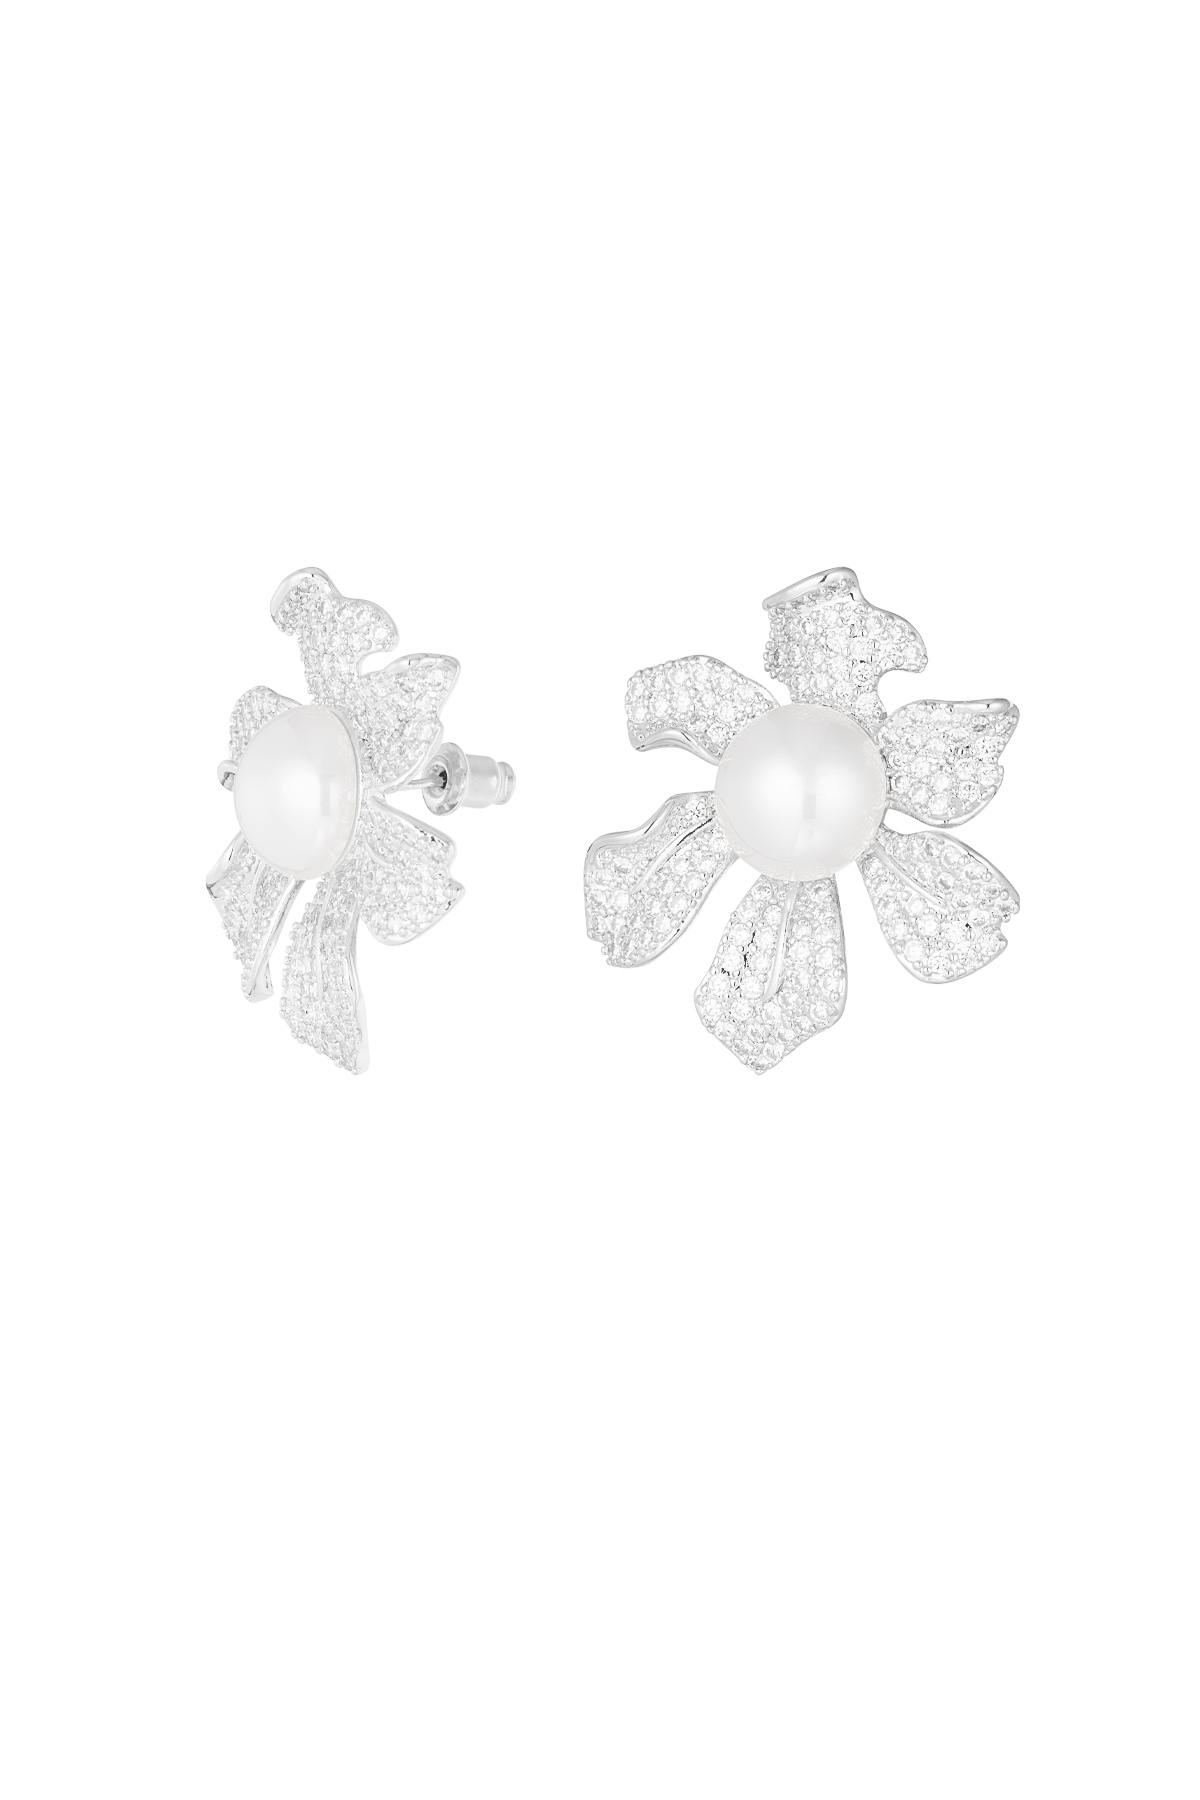 Orecchini fiore scintillante perla argento - zircone rame 